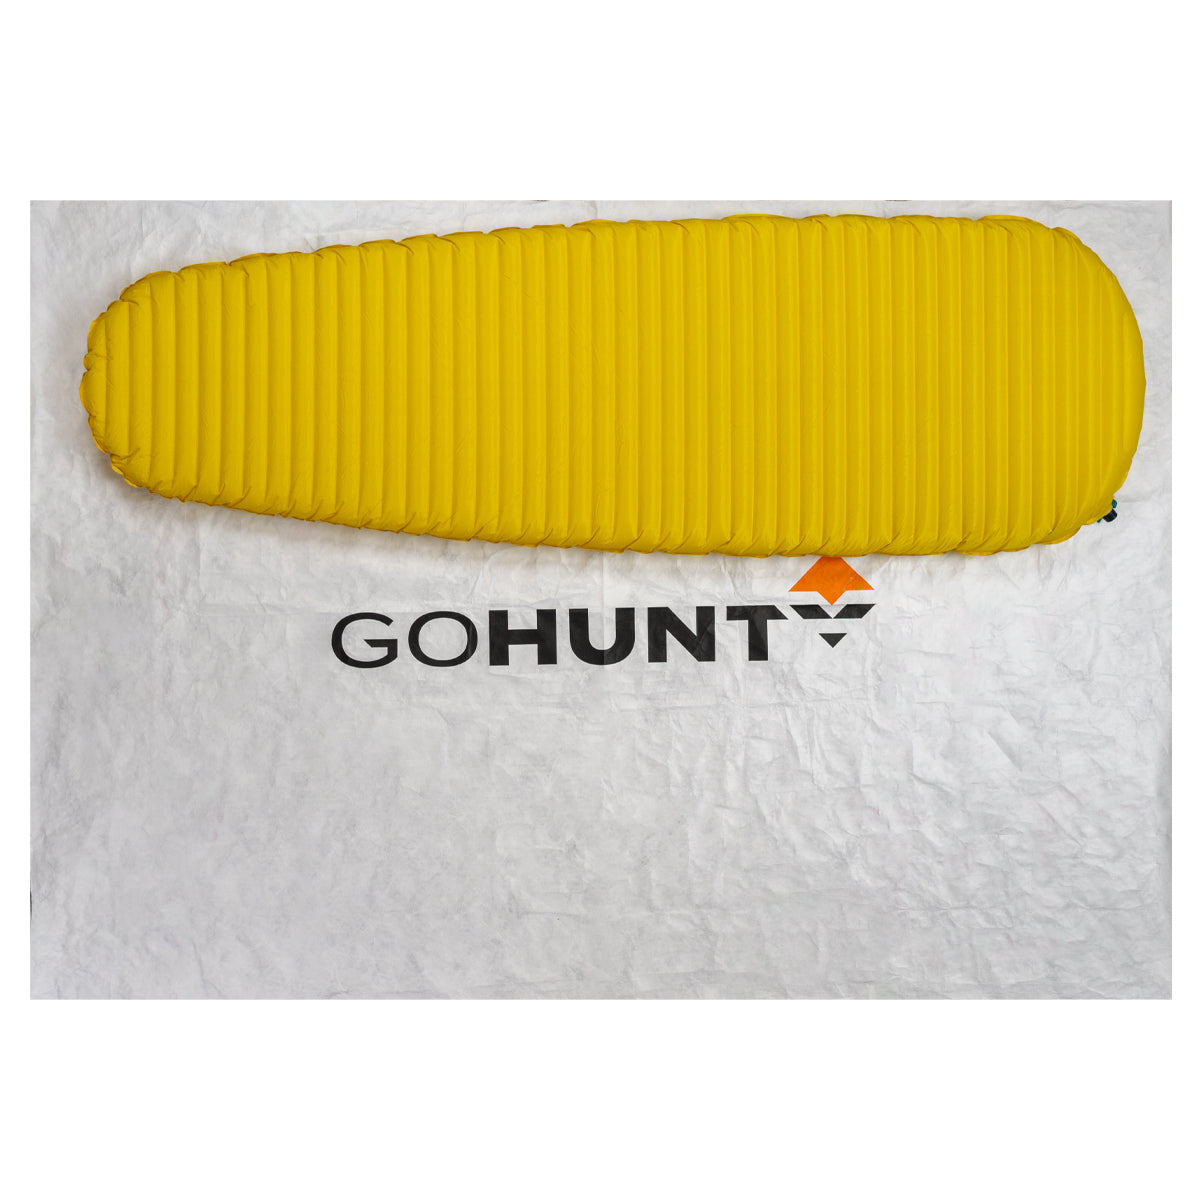 GOHUNT Groundsheet in  by GOHUNT | GOHUNT - GOHUNT Shop